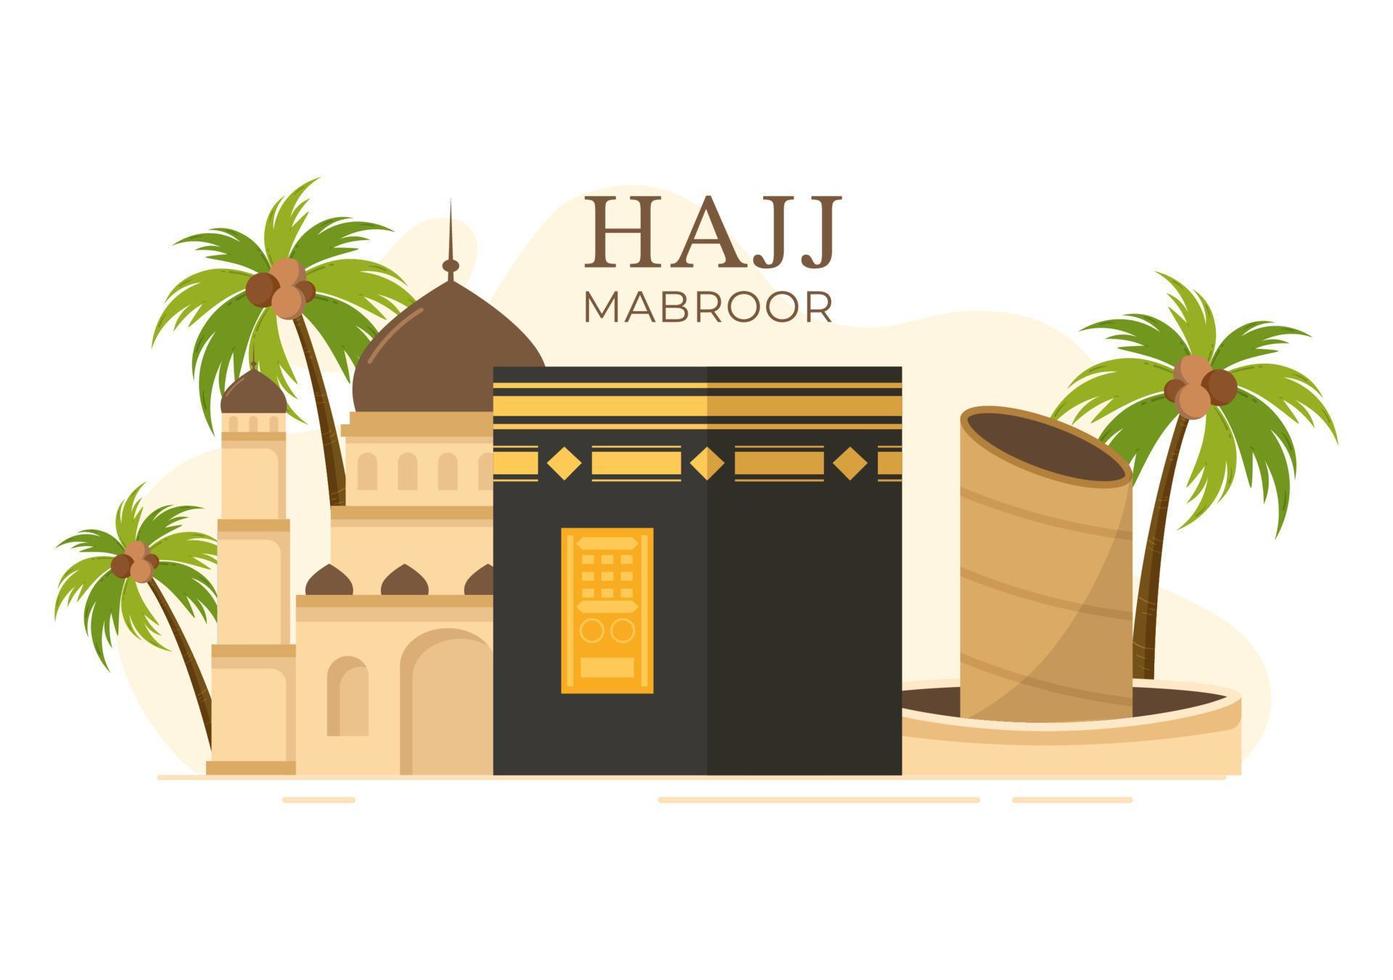 hajj eller umrah mabroor tecknad illustration med makkah kaaba lämplig för bakgrunds-, affisch- eller målsidesmallar vektor